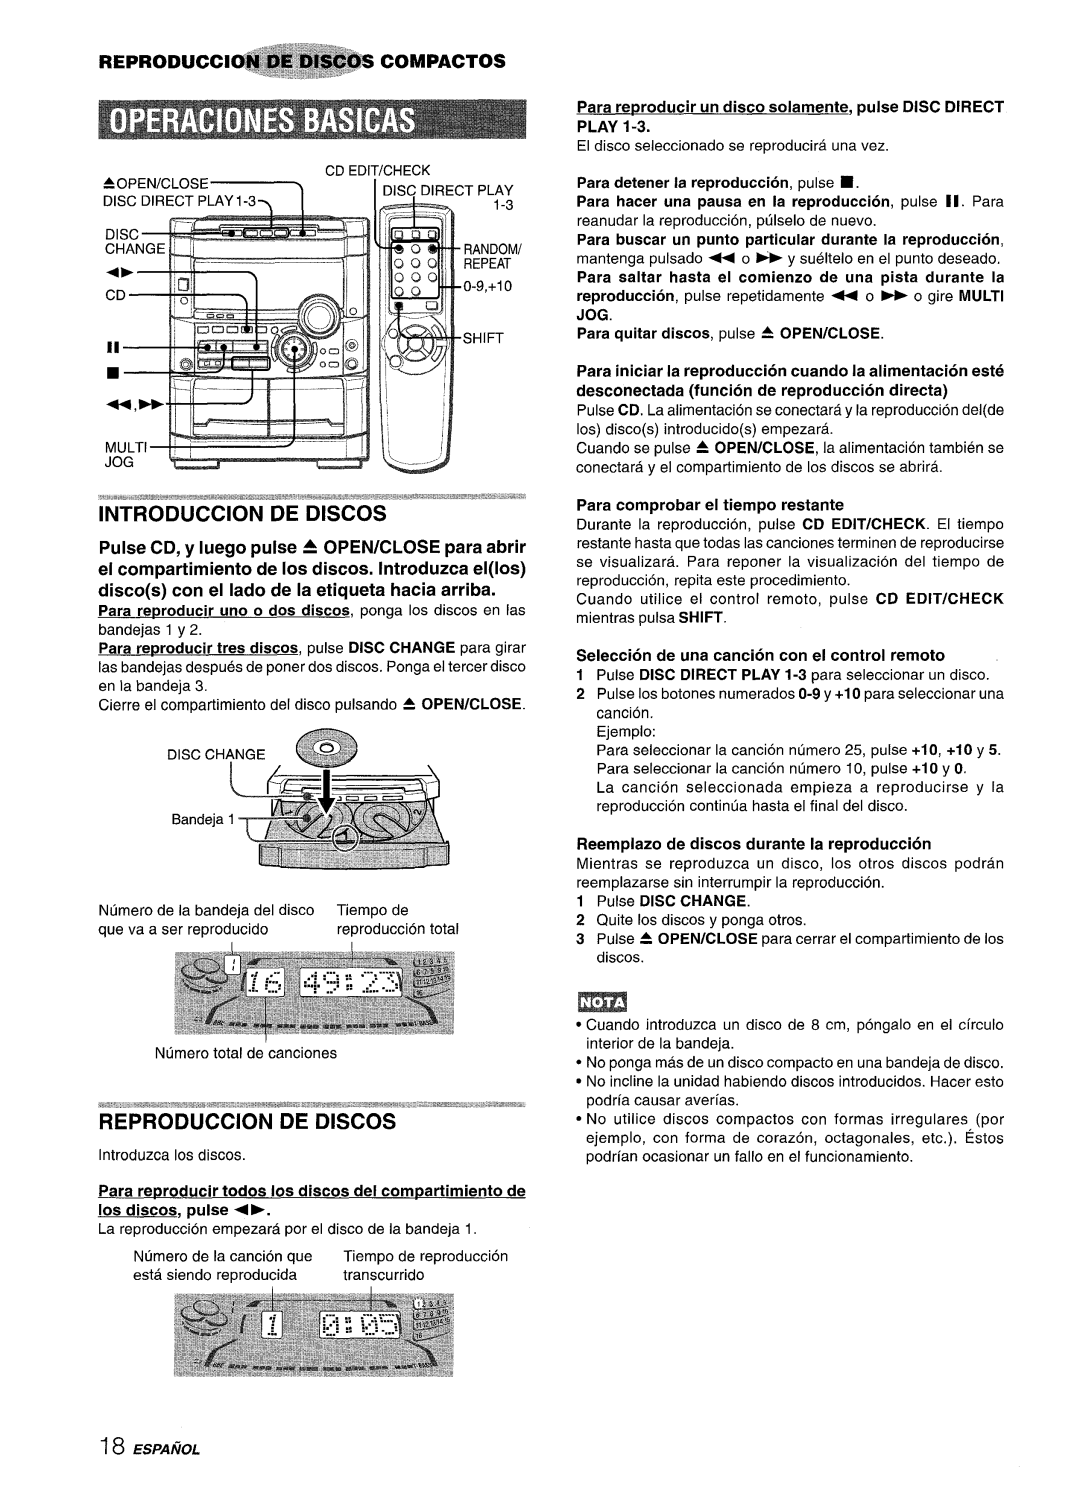 Sony NSX-A777 manual REPRODUCCl~@~@~B=@COMPACTOS, Seleccion de una cancion con el control remoto, ESPAfiOL 